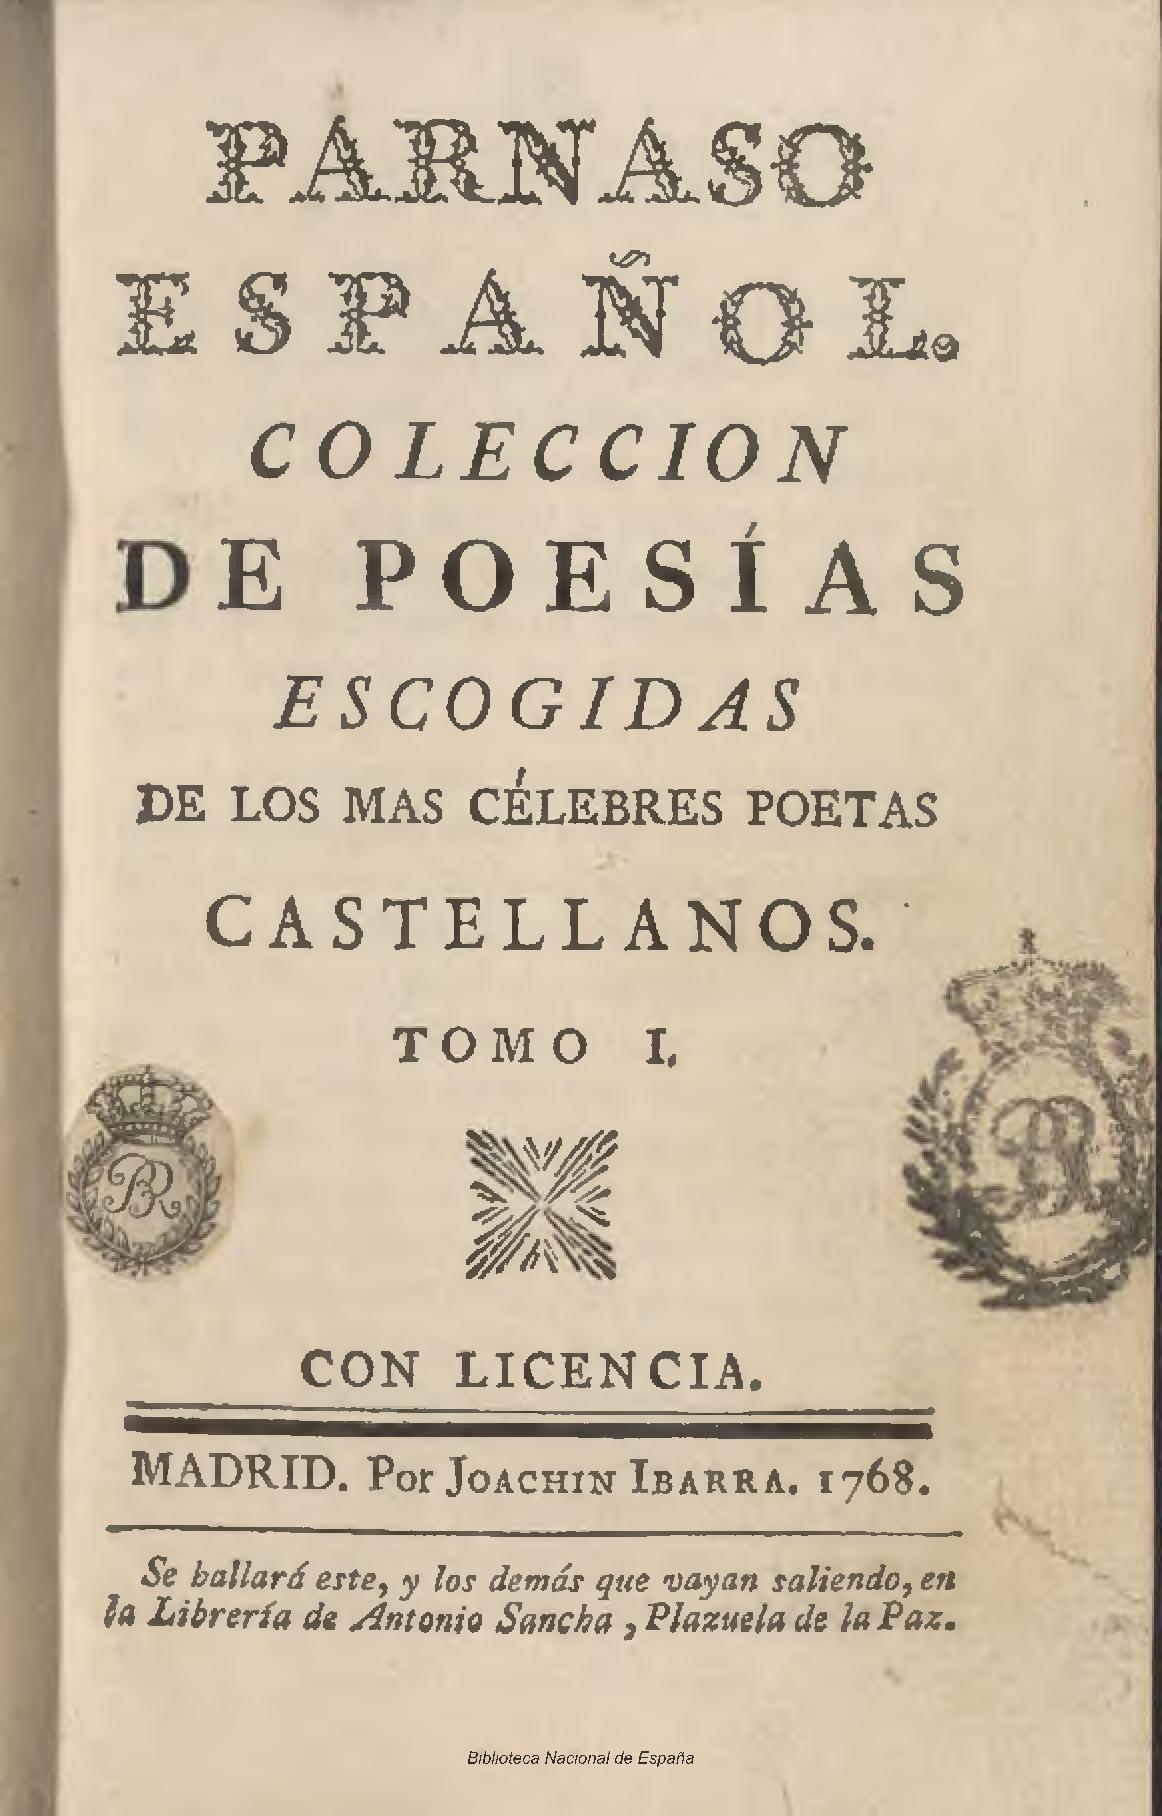 Parnaso español. Colección de poesías escogidas de los más célebres poetas castellanos, Tomo I